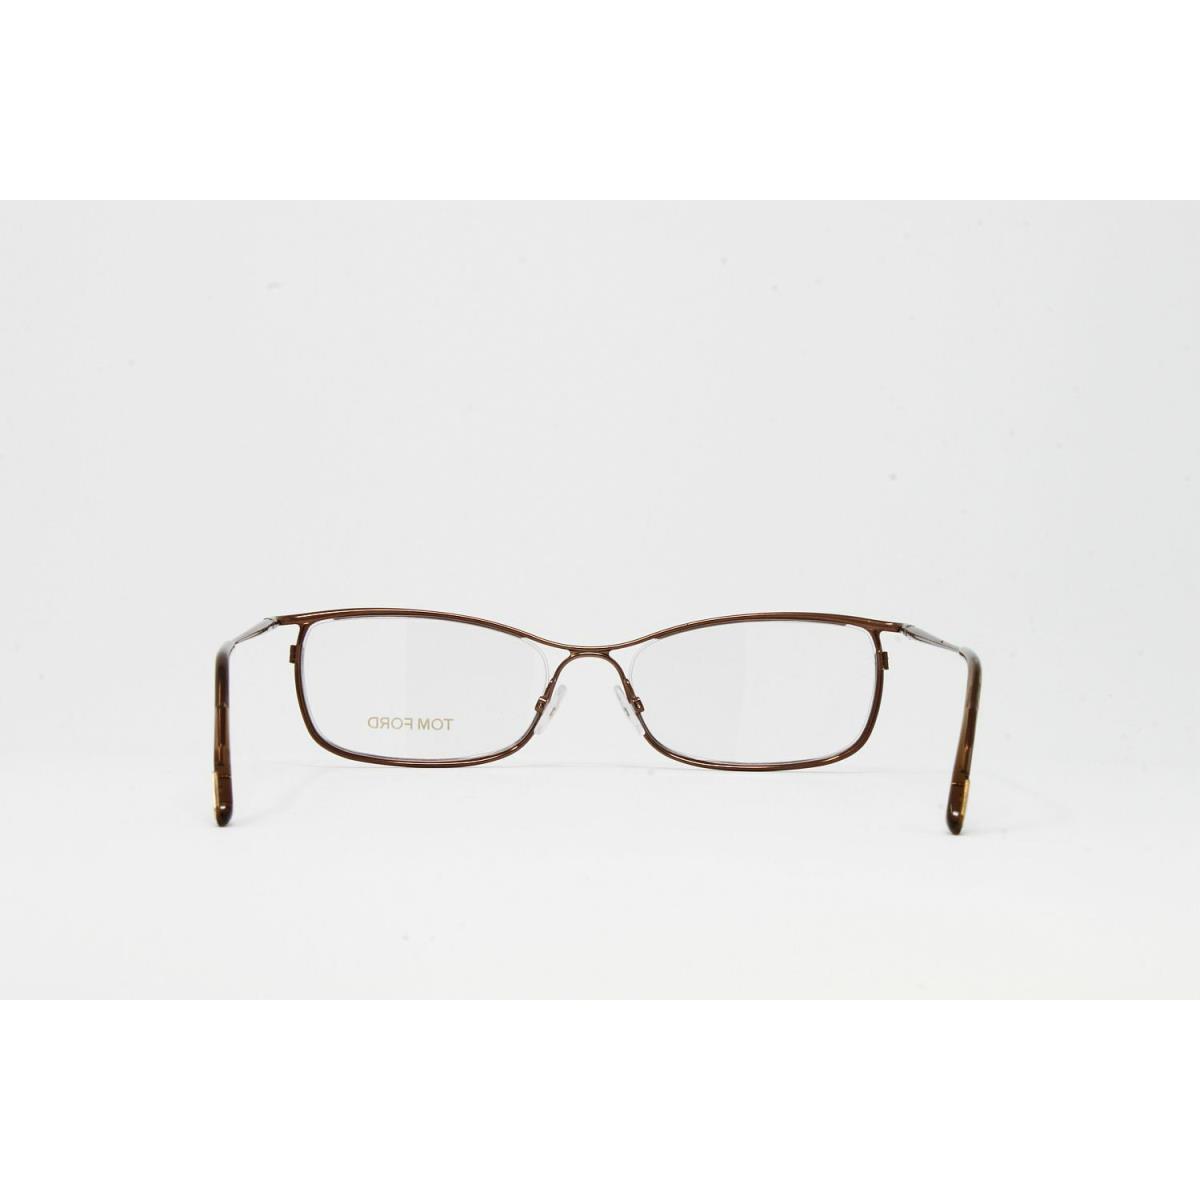 Tom Ford eyeglasses Color - Brown Frame 2